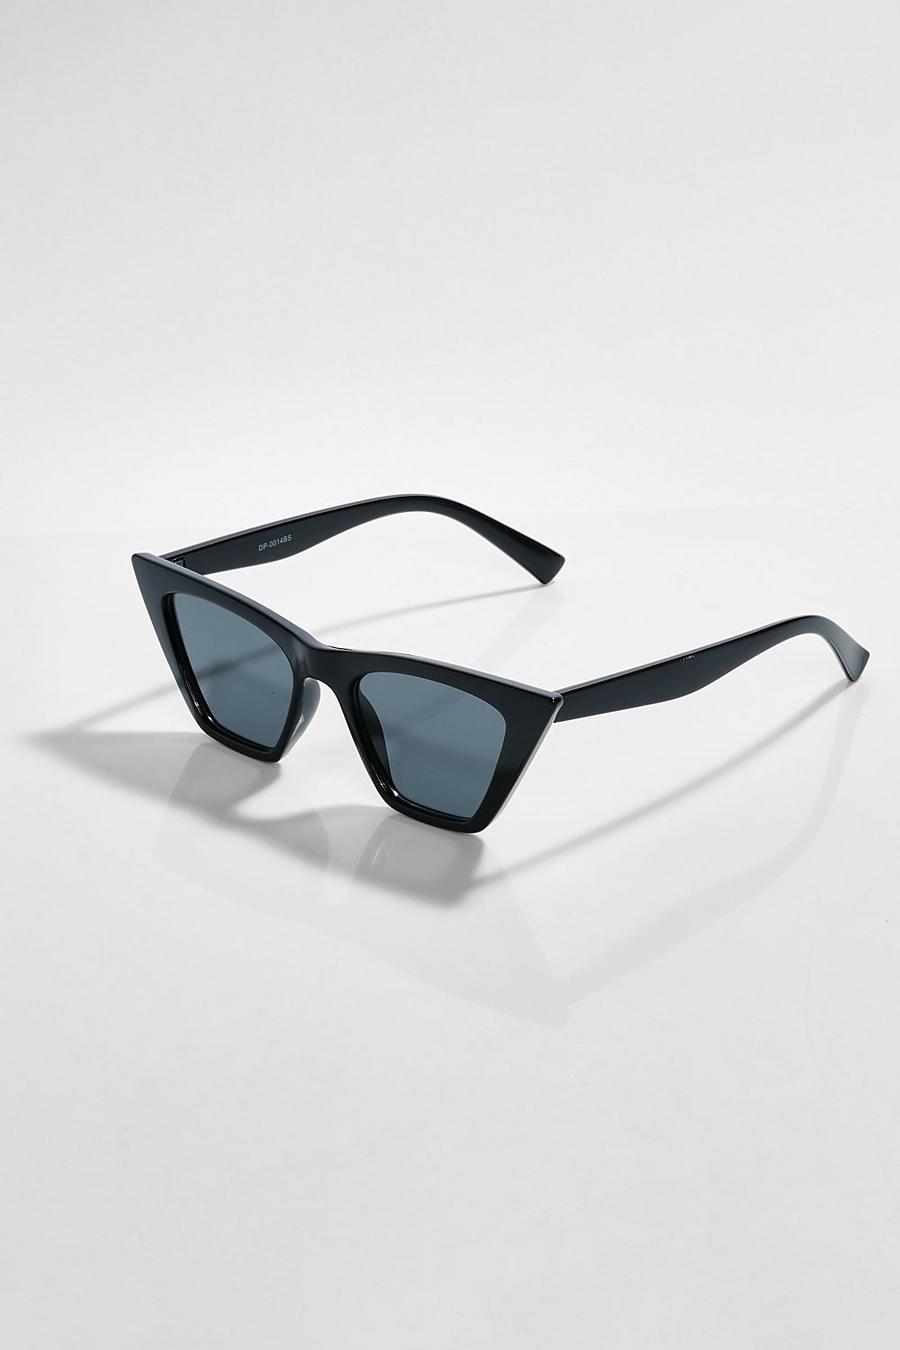 Gafas de sol oversize estilo ojo de gato de carey, Black nero